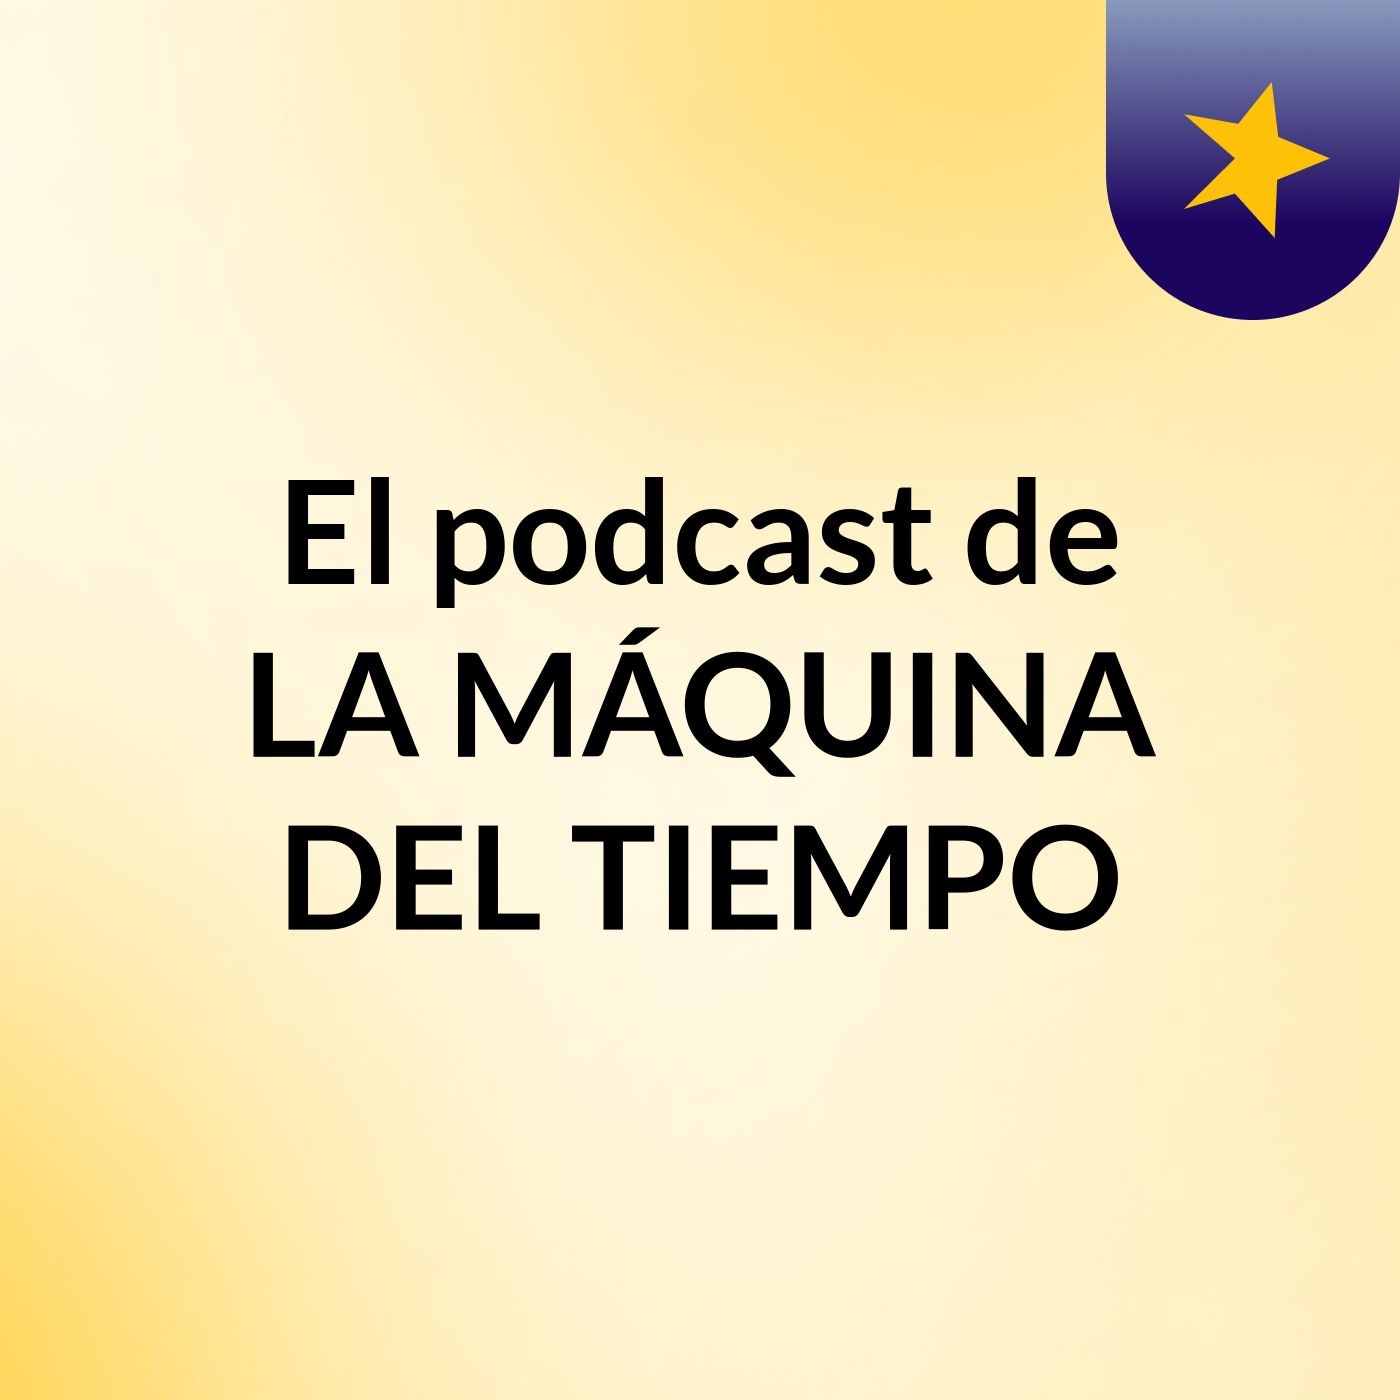 El podcast de LA MÁQUINA DEL TIEMPO